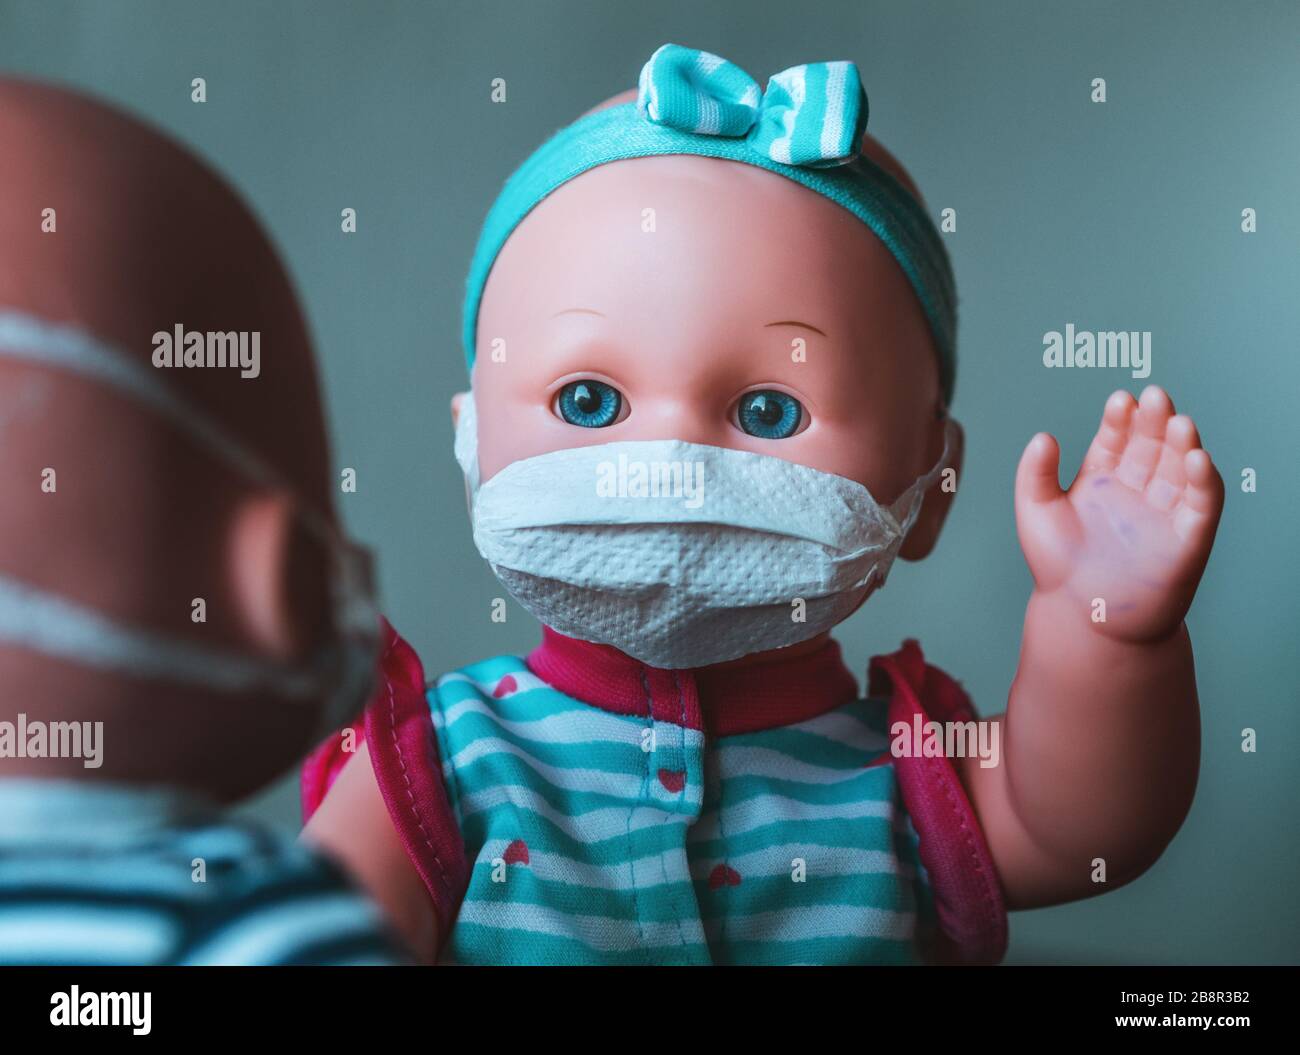 Eine Babypuppe mit einer Maske, die Ansteckung darstellt, bei der die verunreinigte Hand angehoben wird, um eine weitere Puppe mit einer Maske zu salutieren Stockfoto